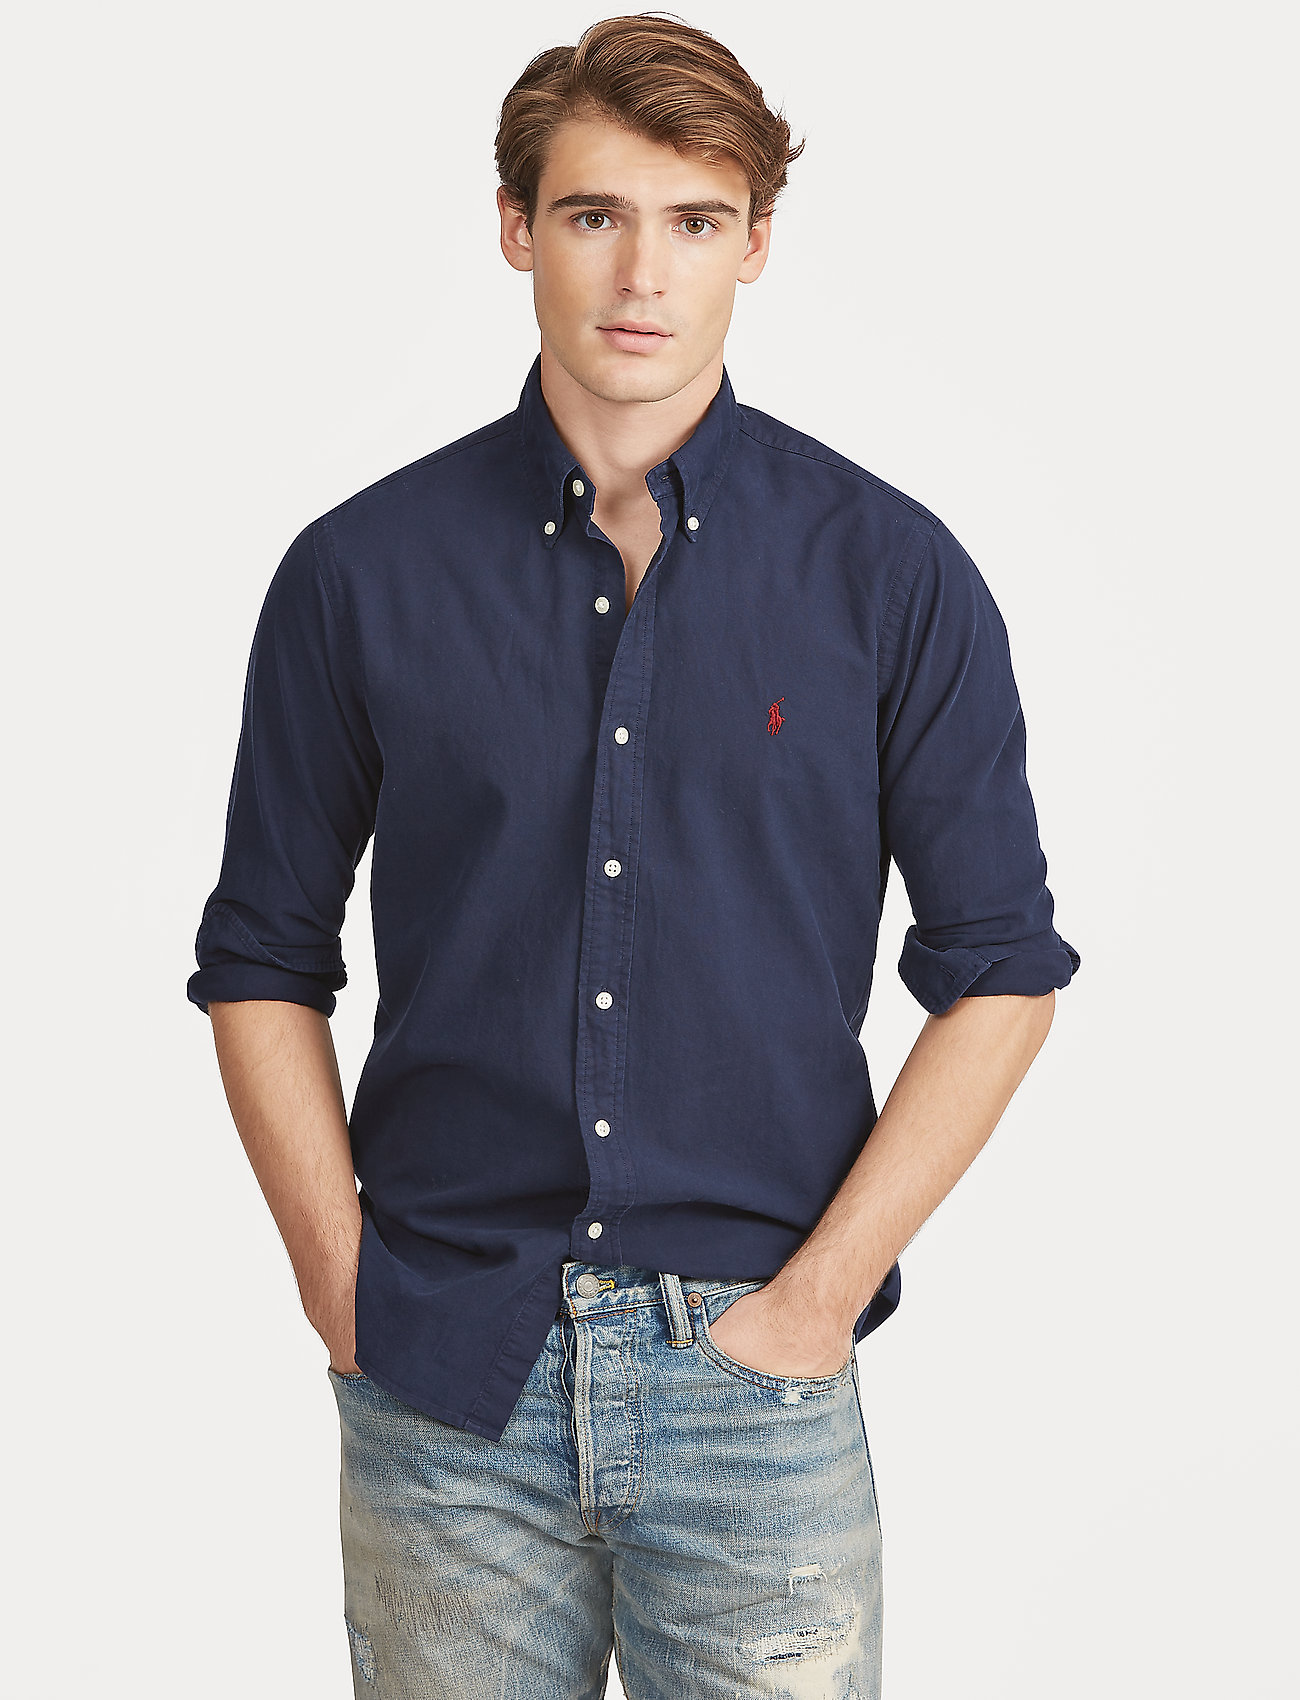 koud Harmonisch Respectievelijk Polo Ralph Lauren Slim Fit Garment-dyed Oxford Shirt - Casual shirts -  Boozt.com